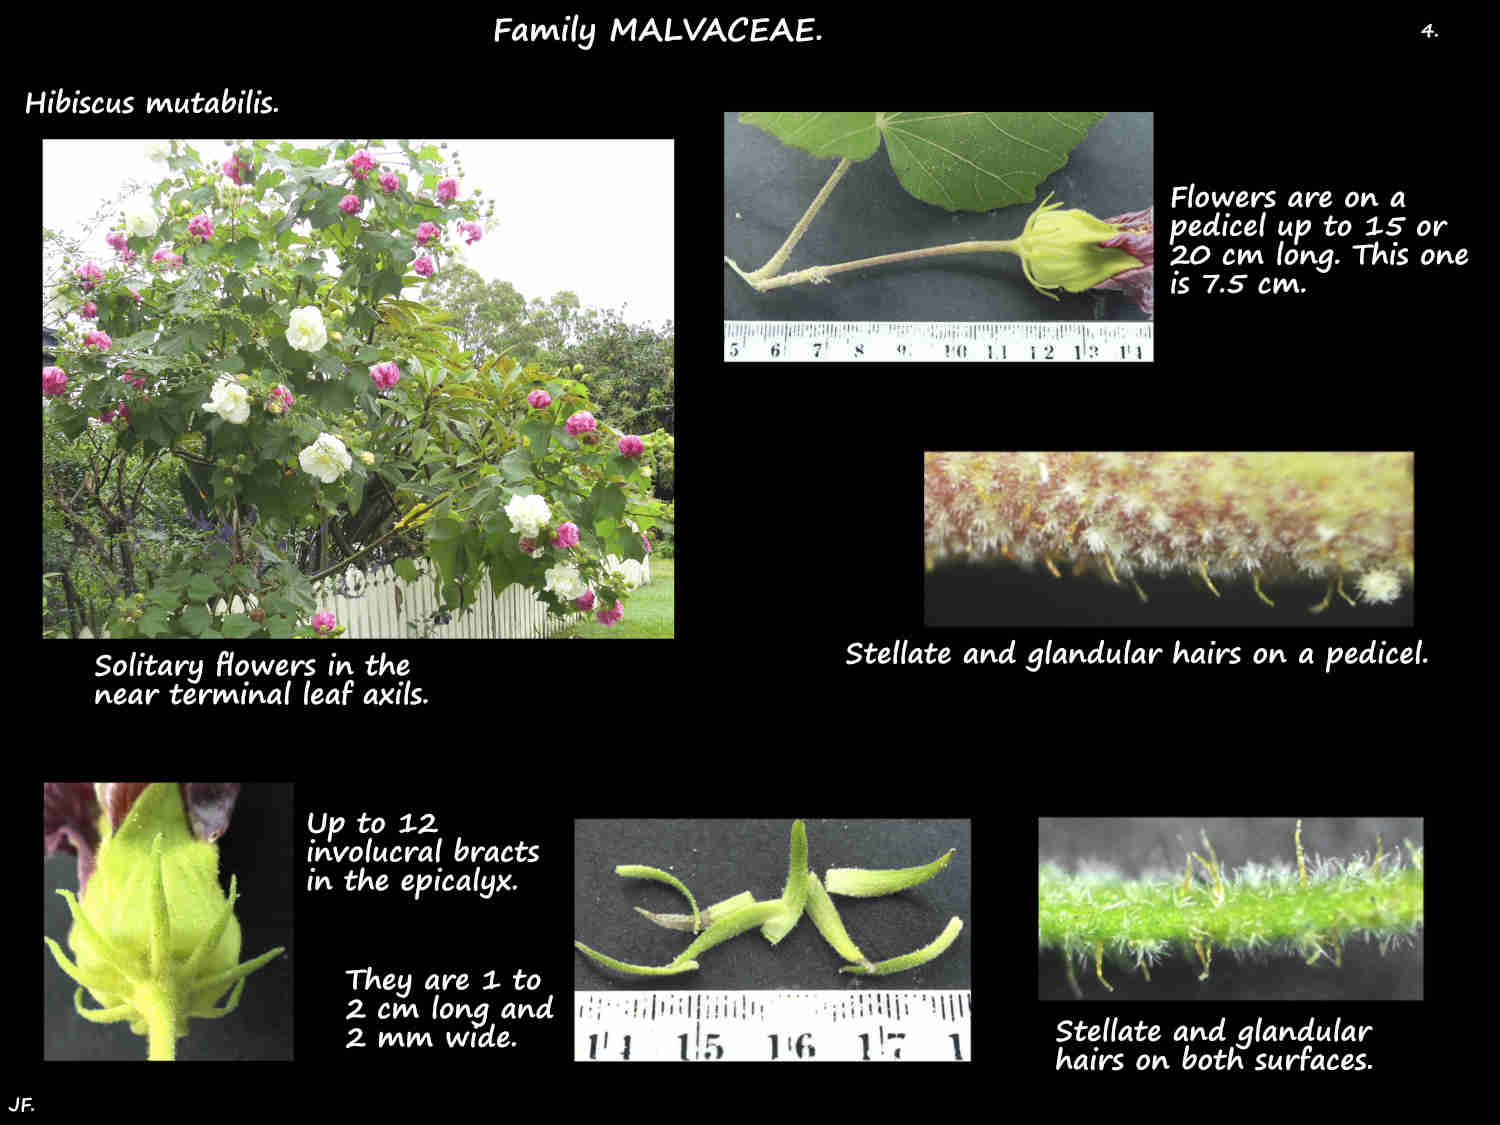 4 Hibiscus mutabilis inflorescences